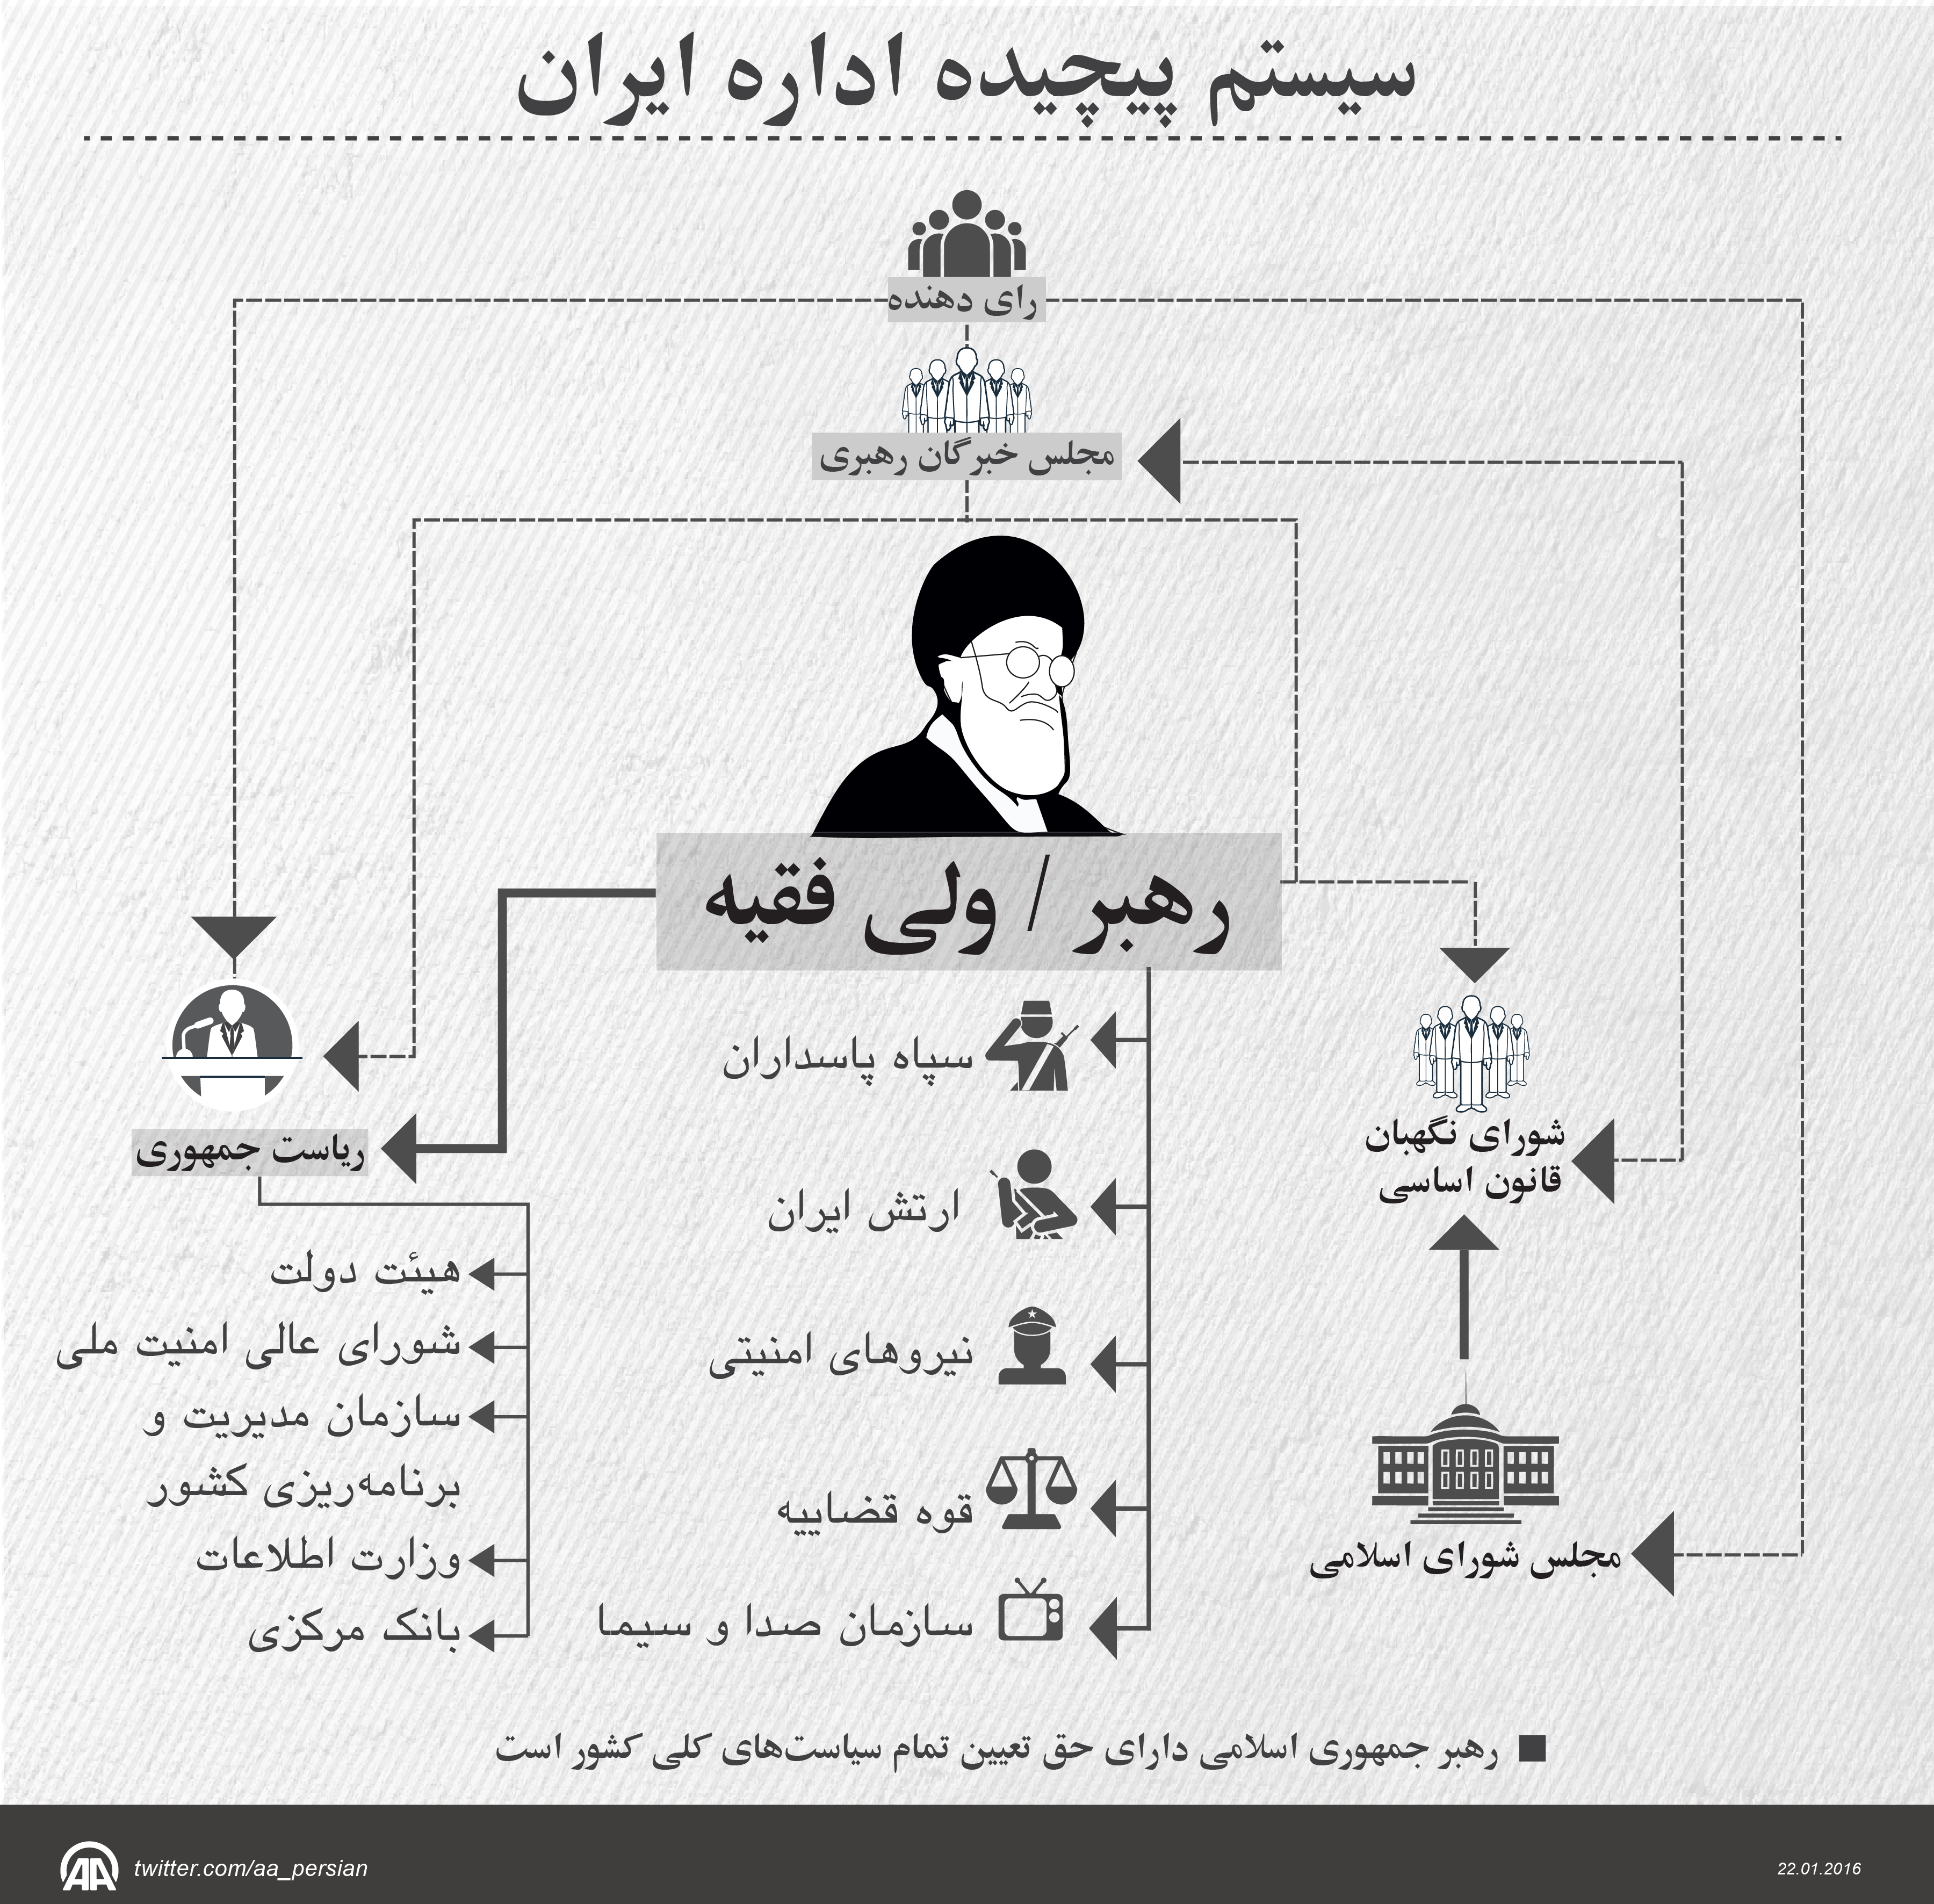 سیستم پیچیده حاکمیت ایران